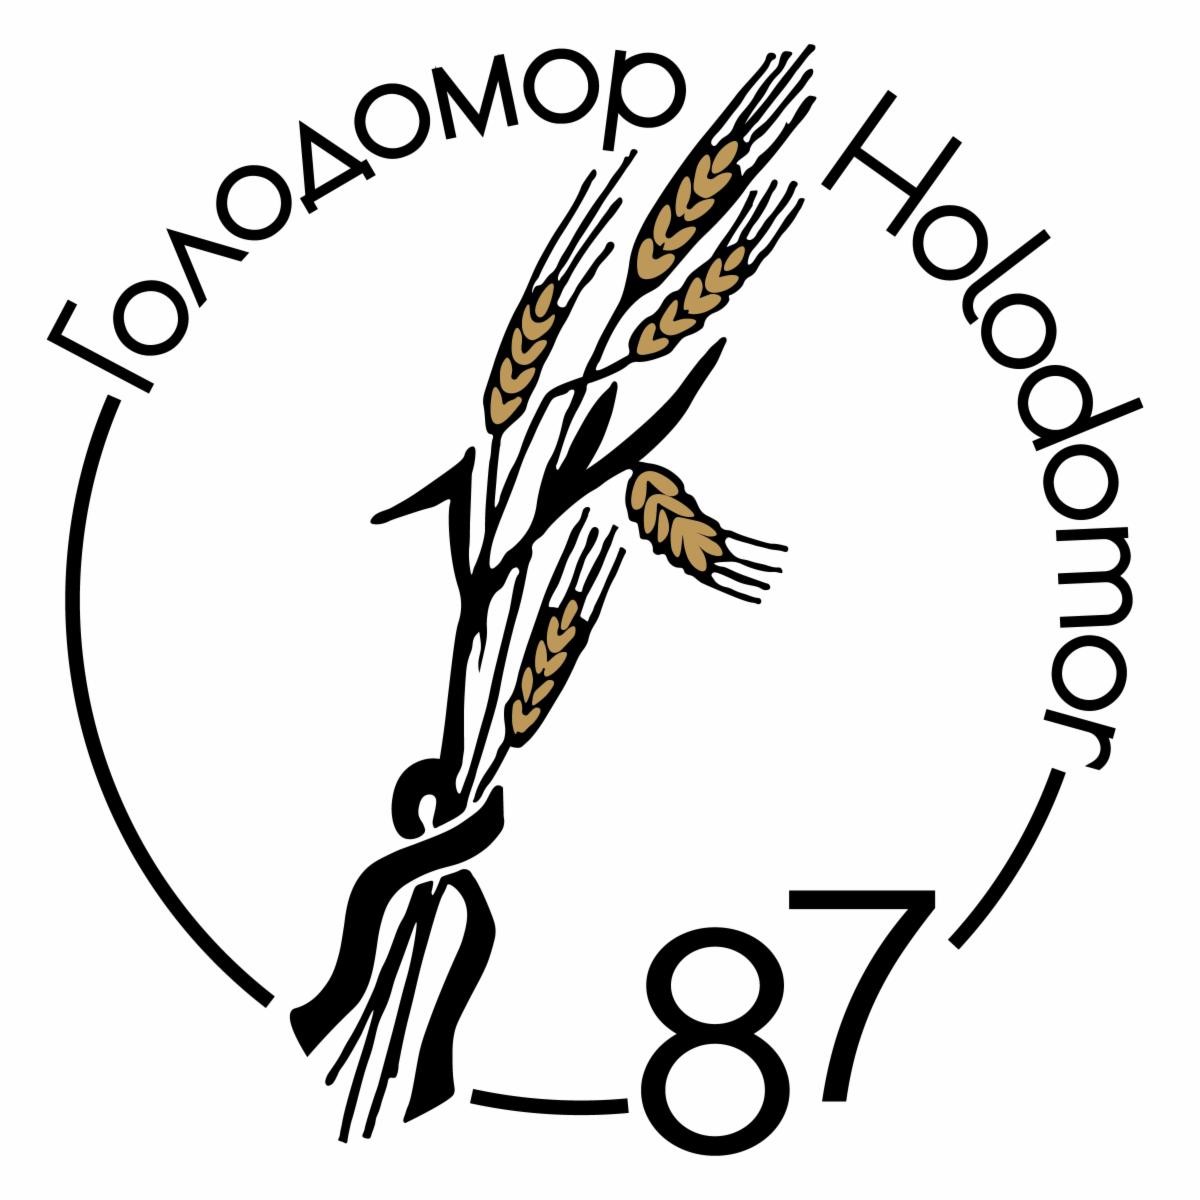 Holodomor 87 Image_1606709378